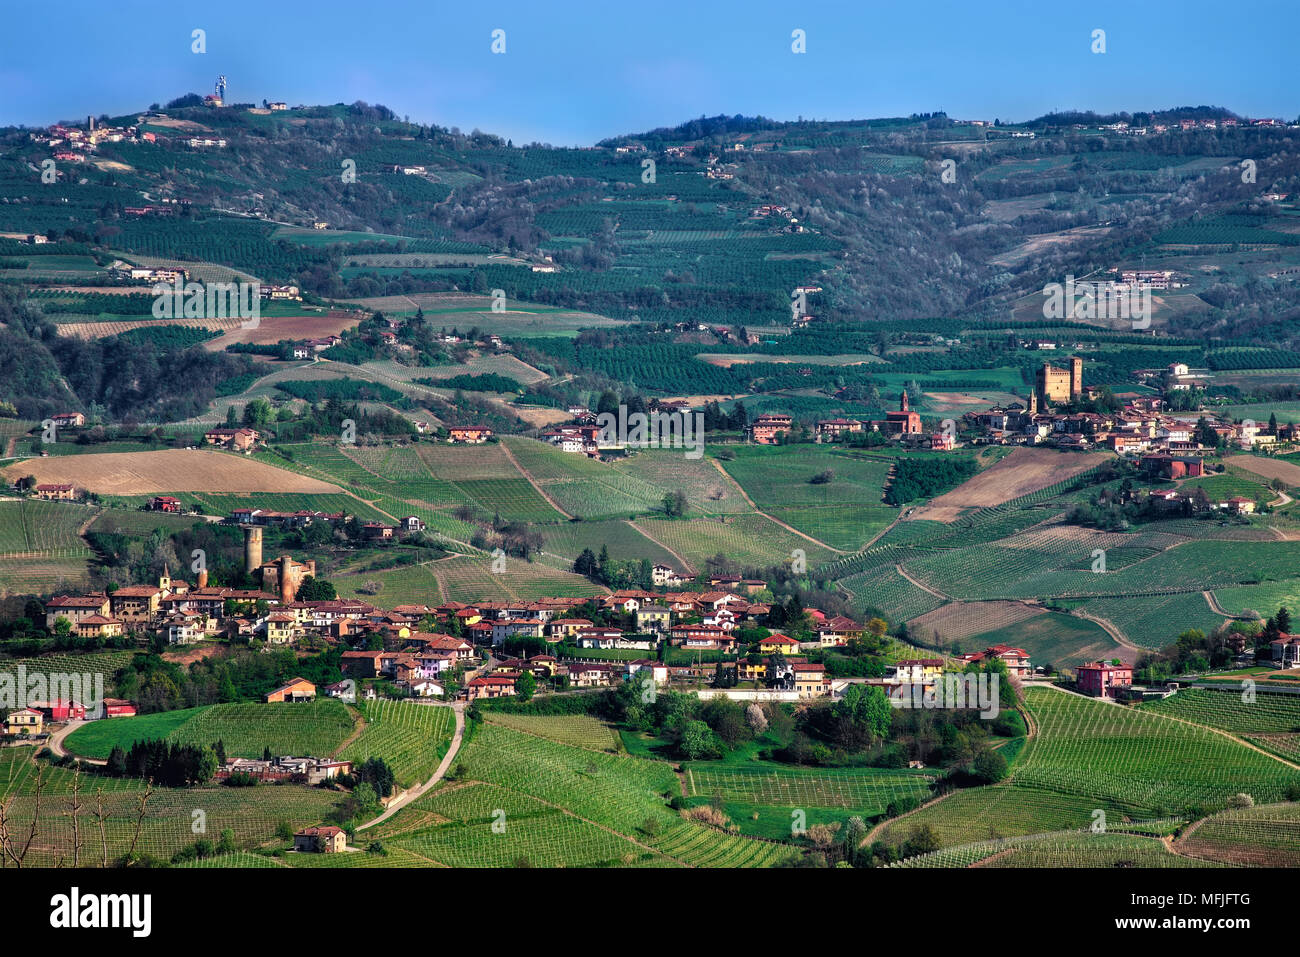 Un ampio panorama di colline e vigneti delle Langhe di Castiglione Falletto (sinistra) e Serralunga d'Alba (a destra). Foto Stock